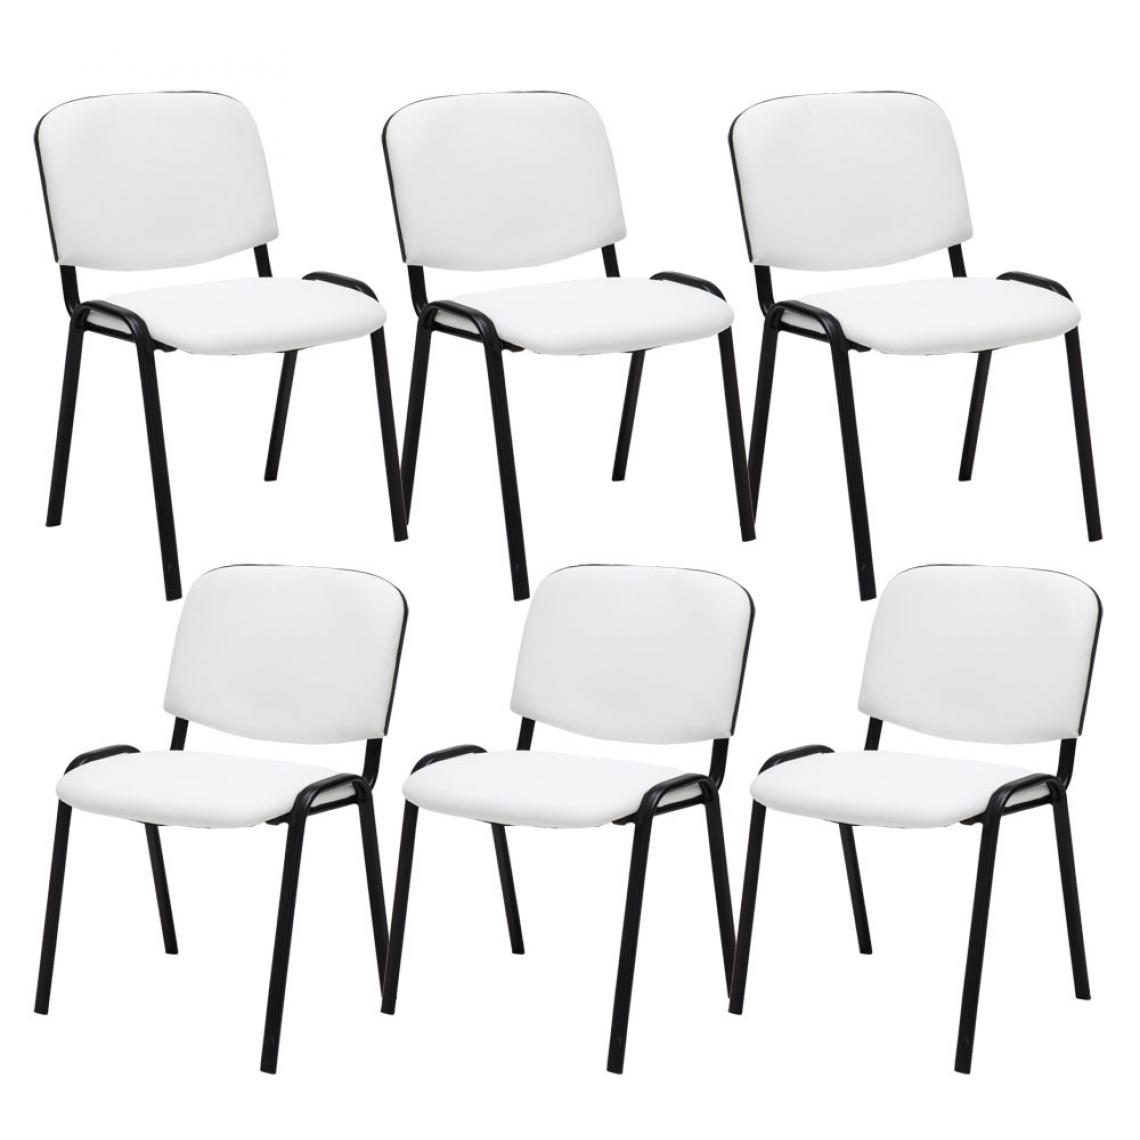 Icaverne - Superbe Lot de 6 chaises visiteurs selection Bamako en cuir artificiel couleur blanc - Chaises